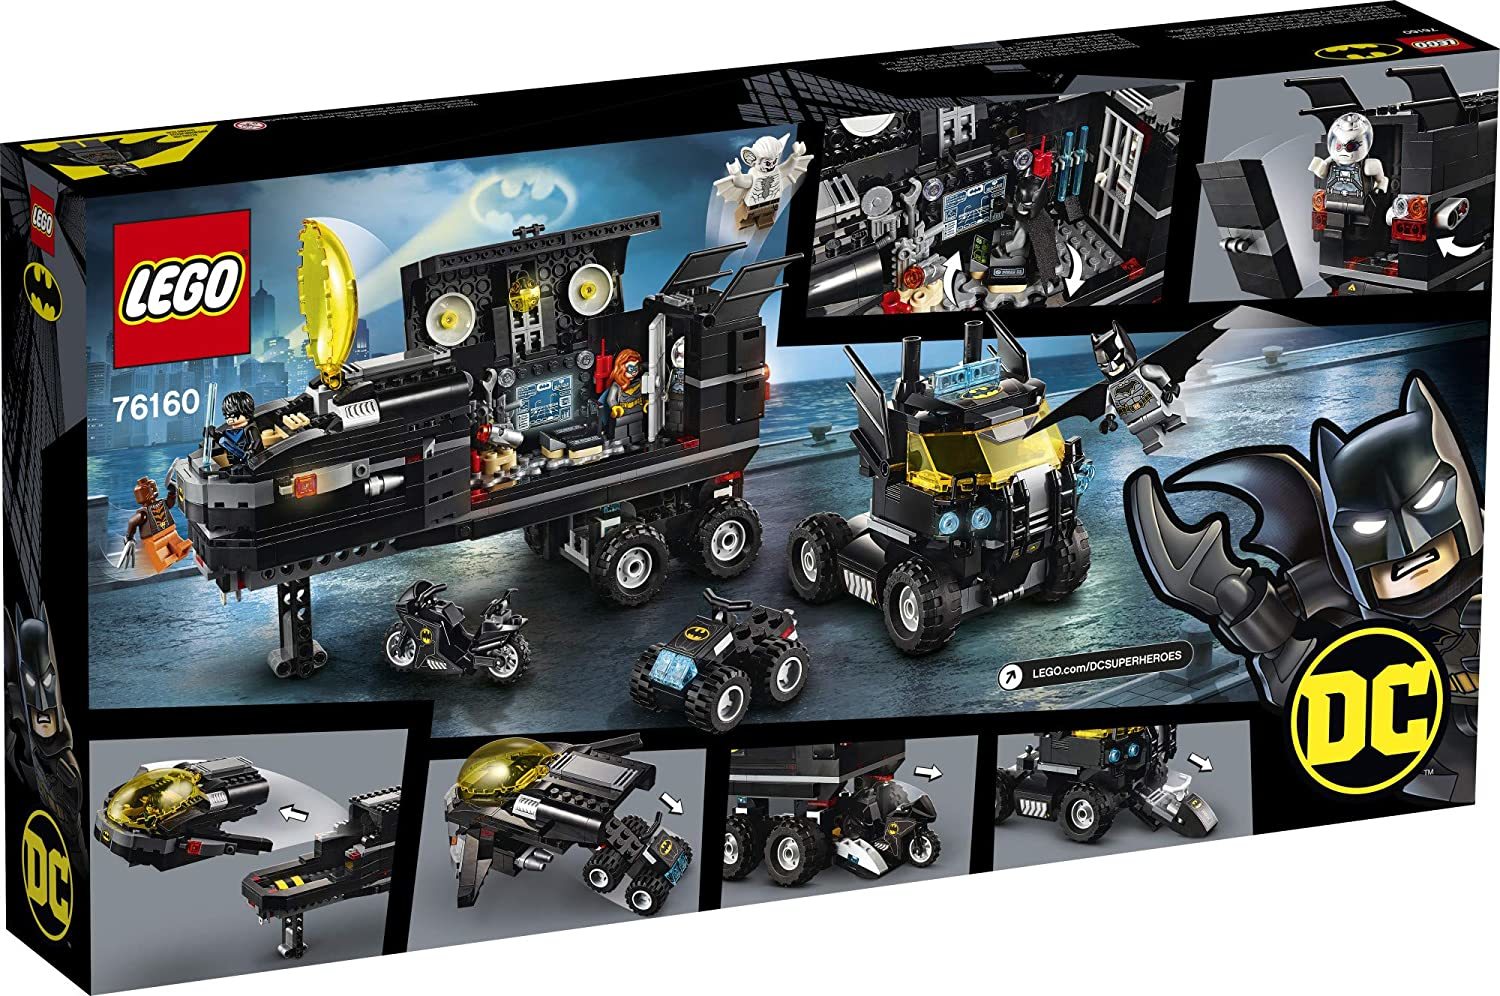 【Bán hàng đích thực】LEGO DC mobile base bat 76160 Batman building toys,  Gotham City Bat Cave set and action mini figure, rất thích hợp cho trẻ từ 6  tuổi trở lên 